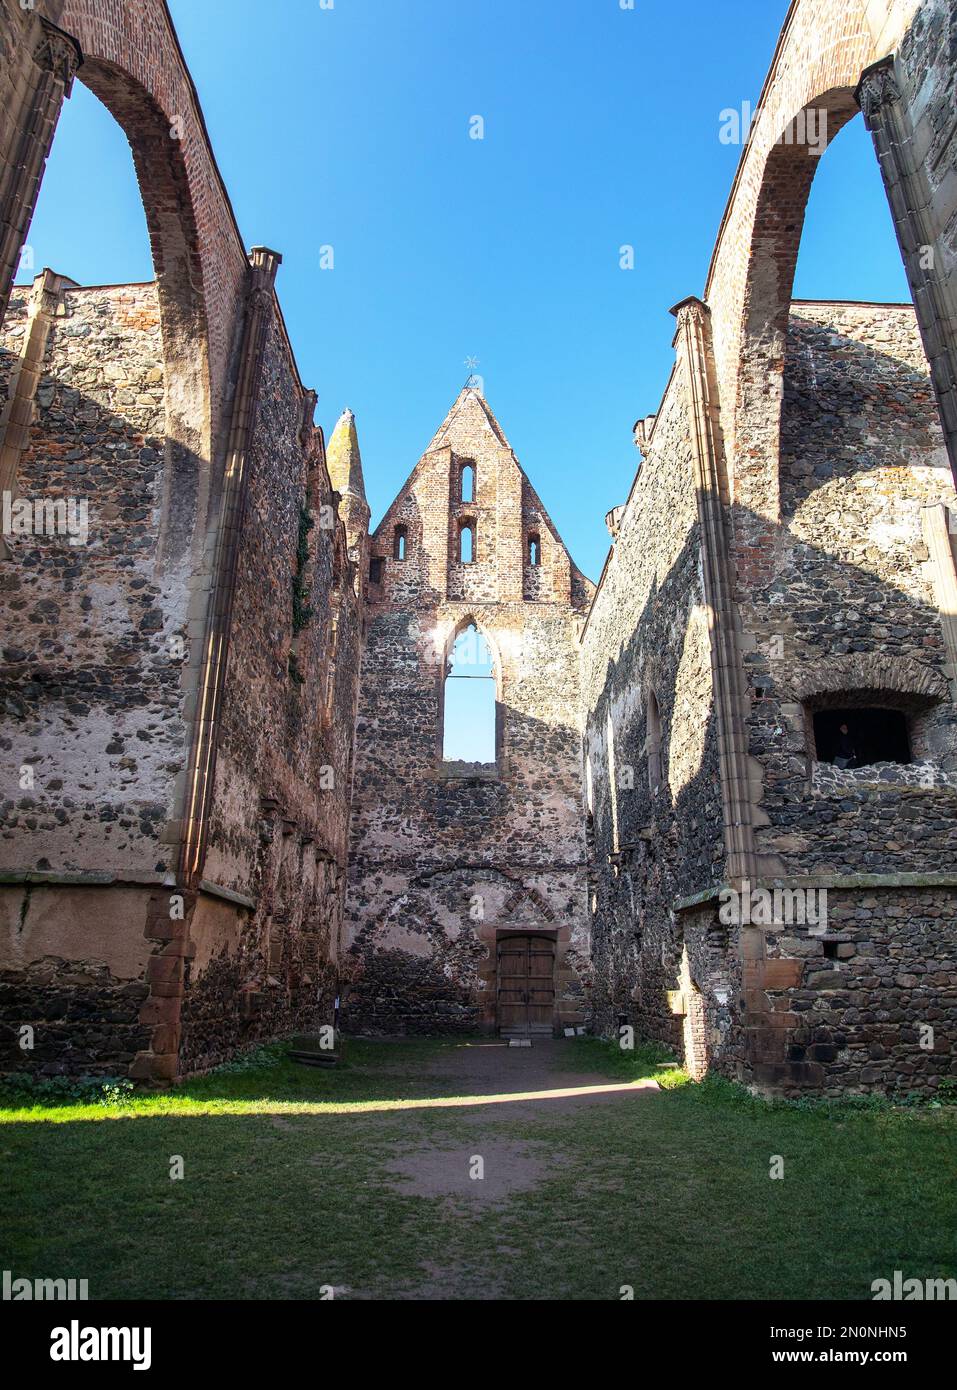 Rosa coeli, rovine della chiesa e del monastero, Dolni Kounice vicino alla città di Ivancice, Moravia meridionale, Repubblica Ceca Foto Stock